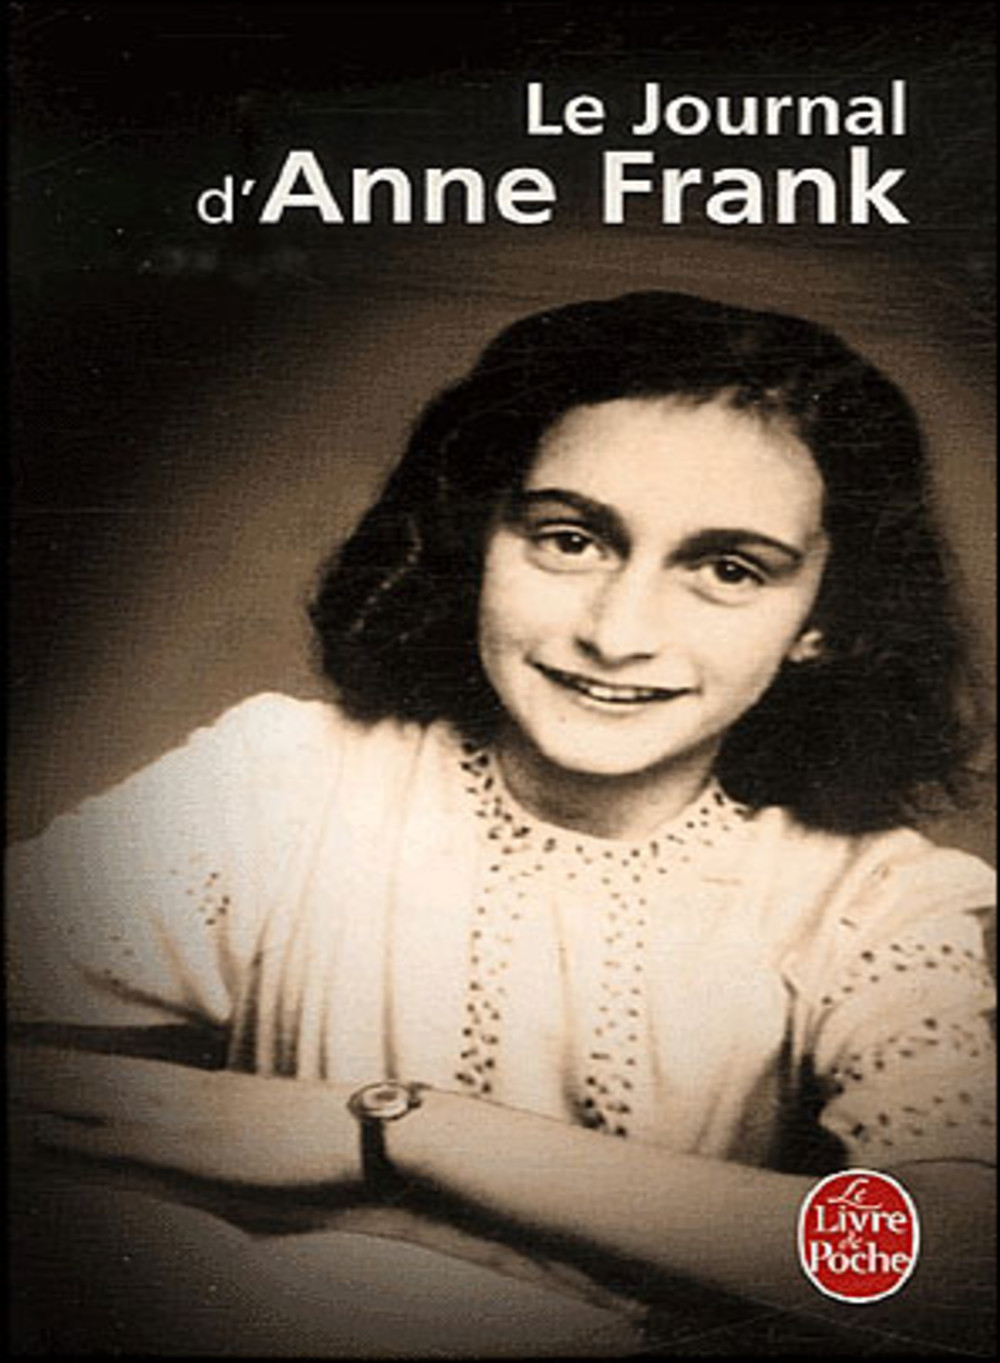 Le Journal D anne Frank Fiche De Lecture Au-delà des mots: Le journal d'Anne Frank